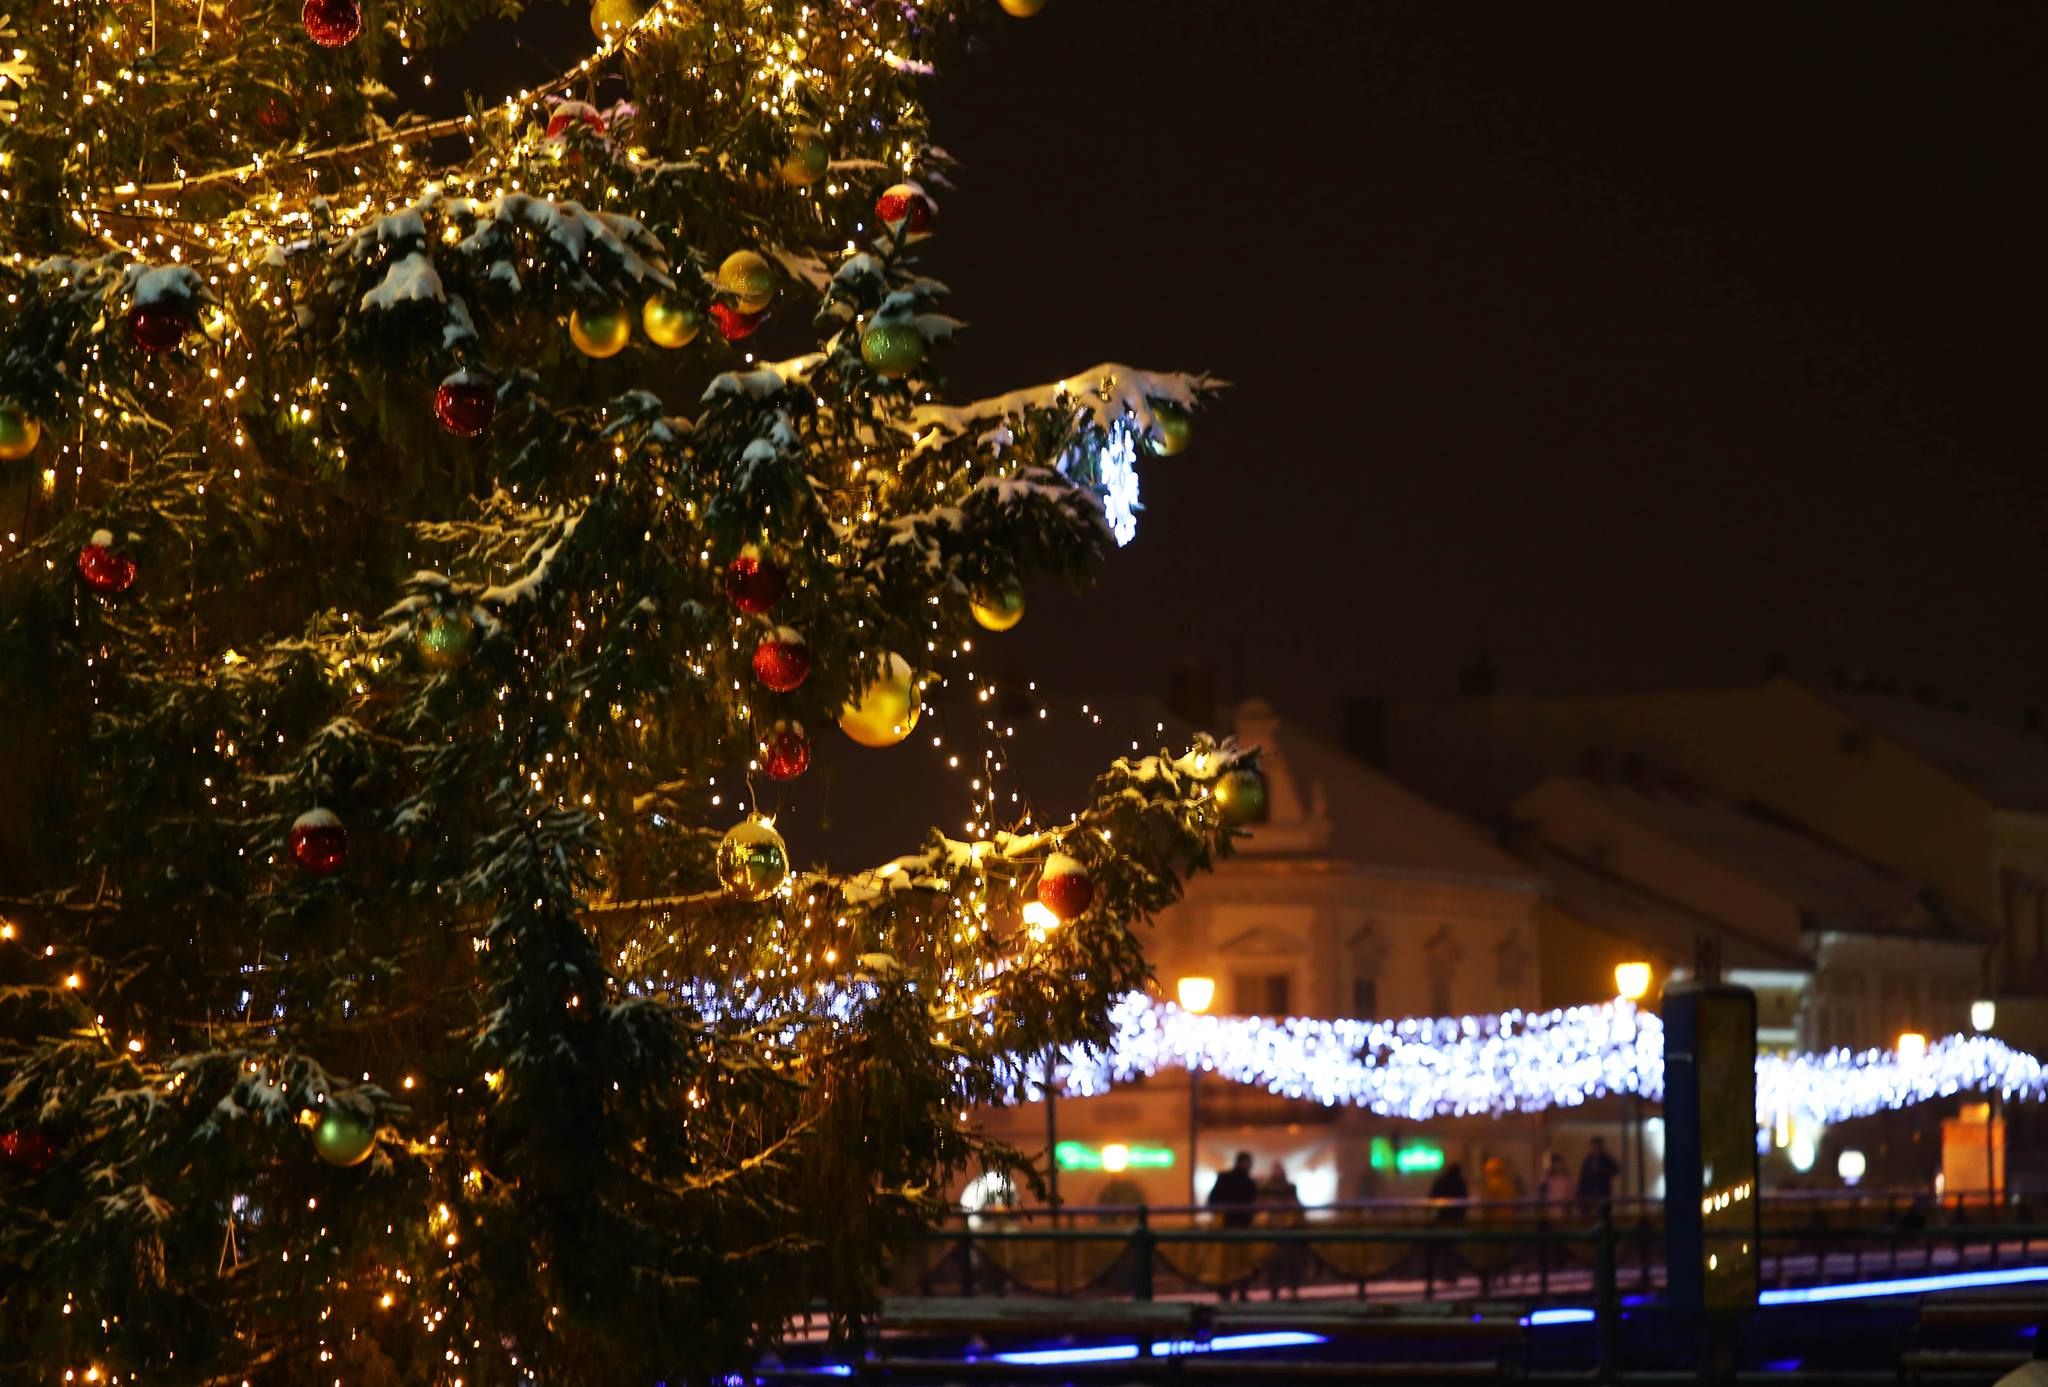 ПРОГРАМА основних новорічно-різдвяних заходів в Ужгороді